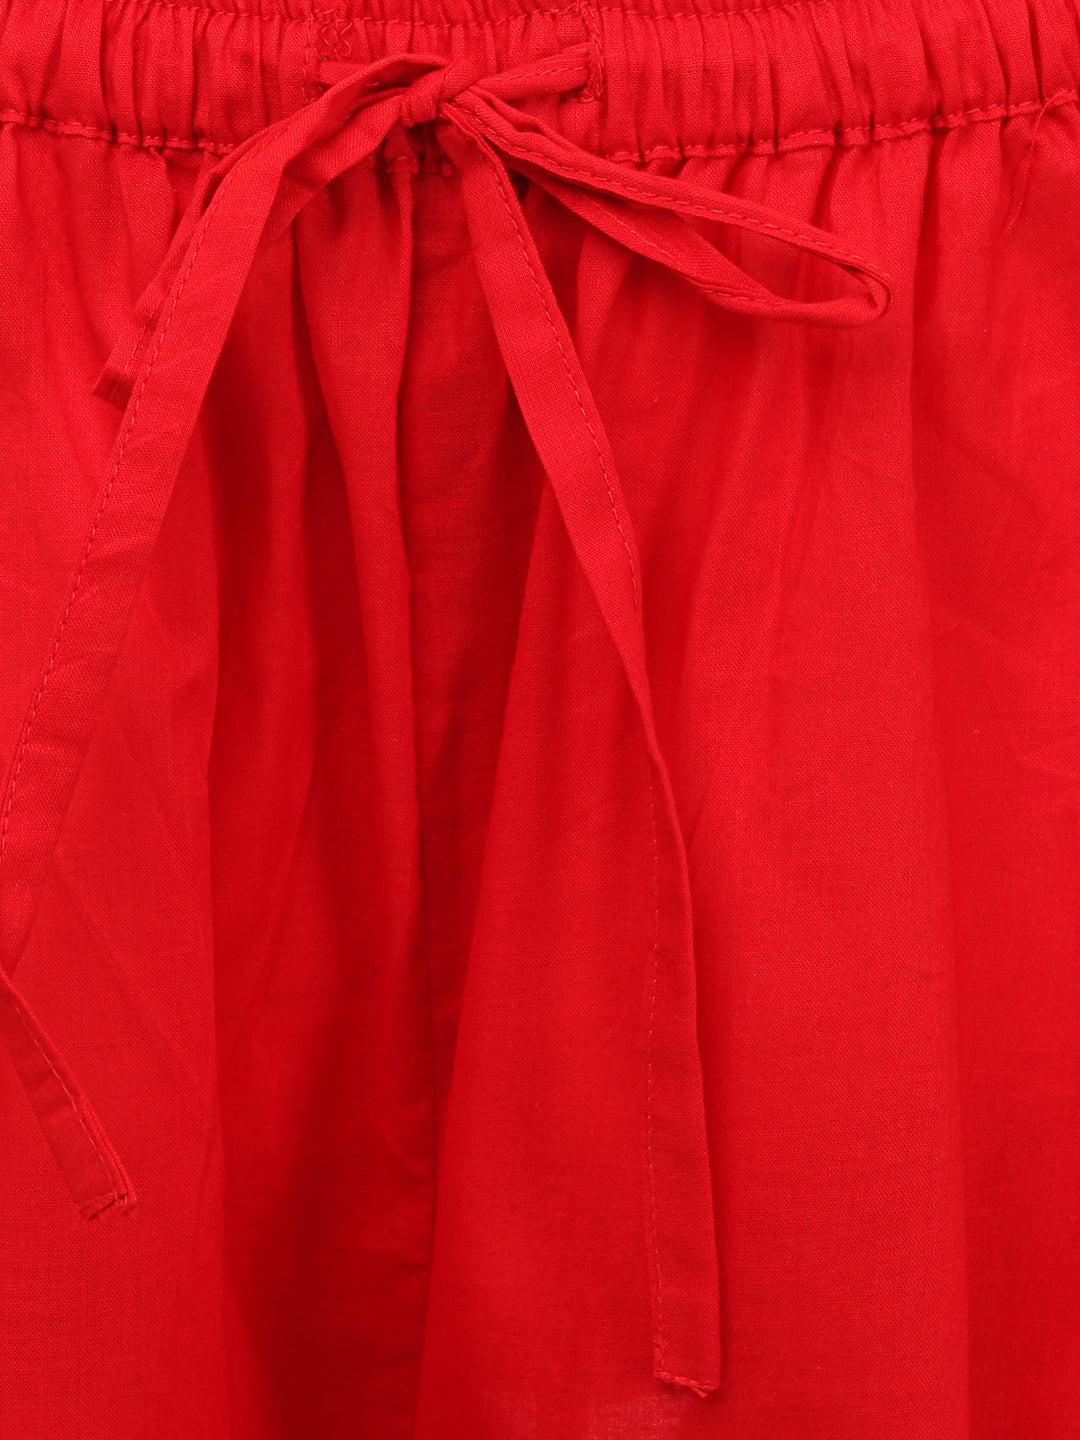 Fashion Beautiful Red Printed Cotton Freesize Palazzo Pants+